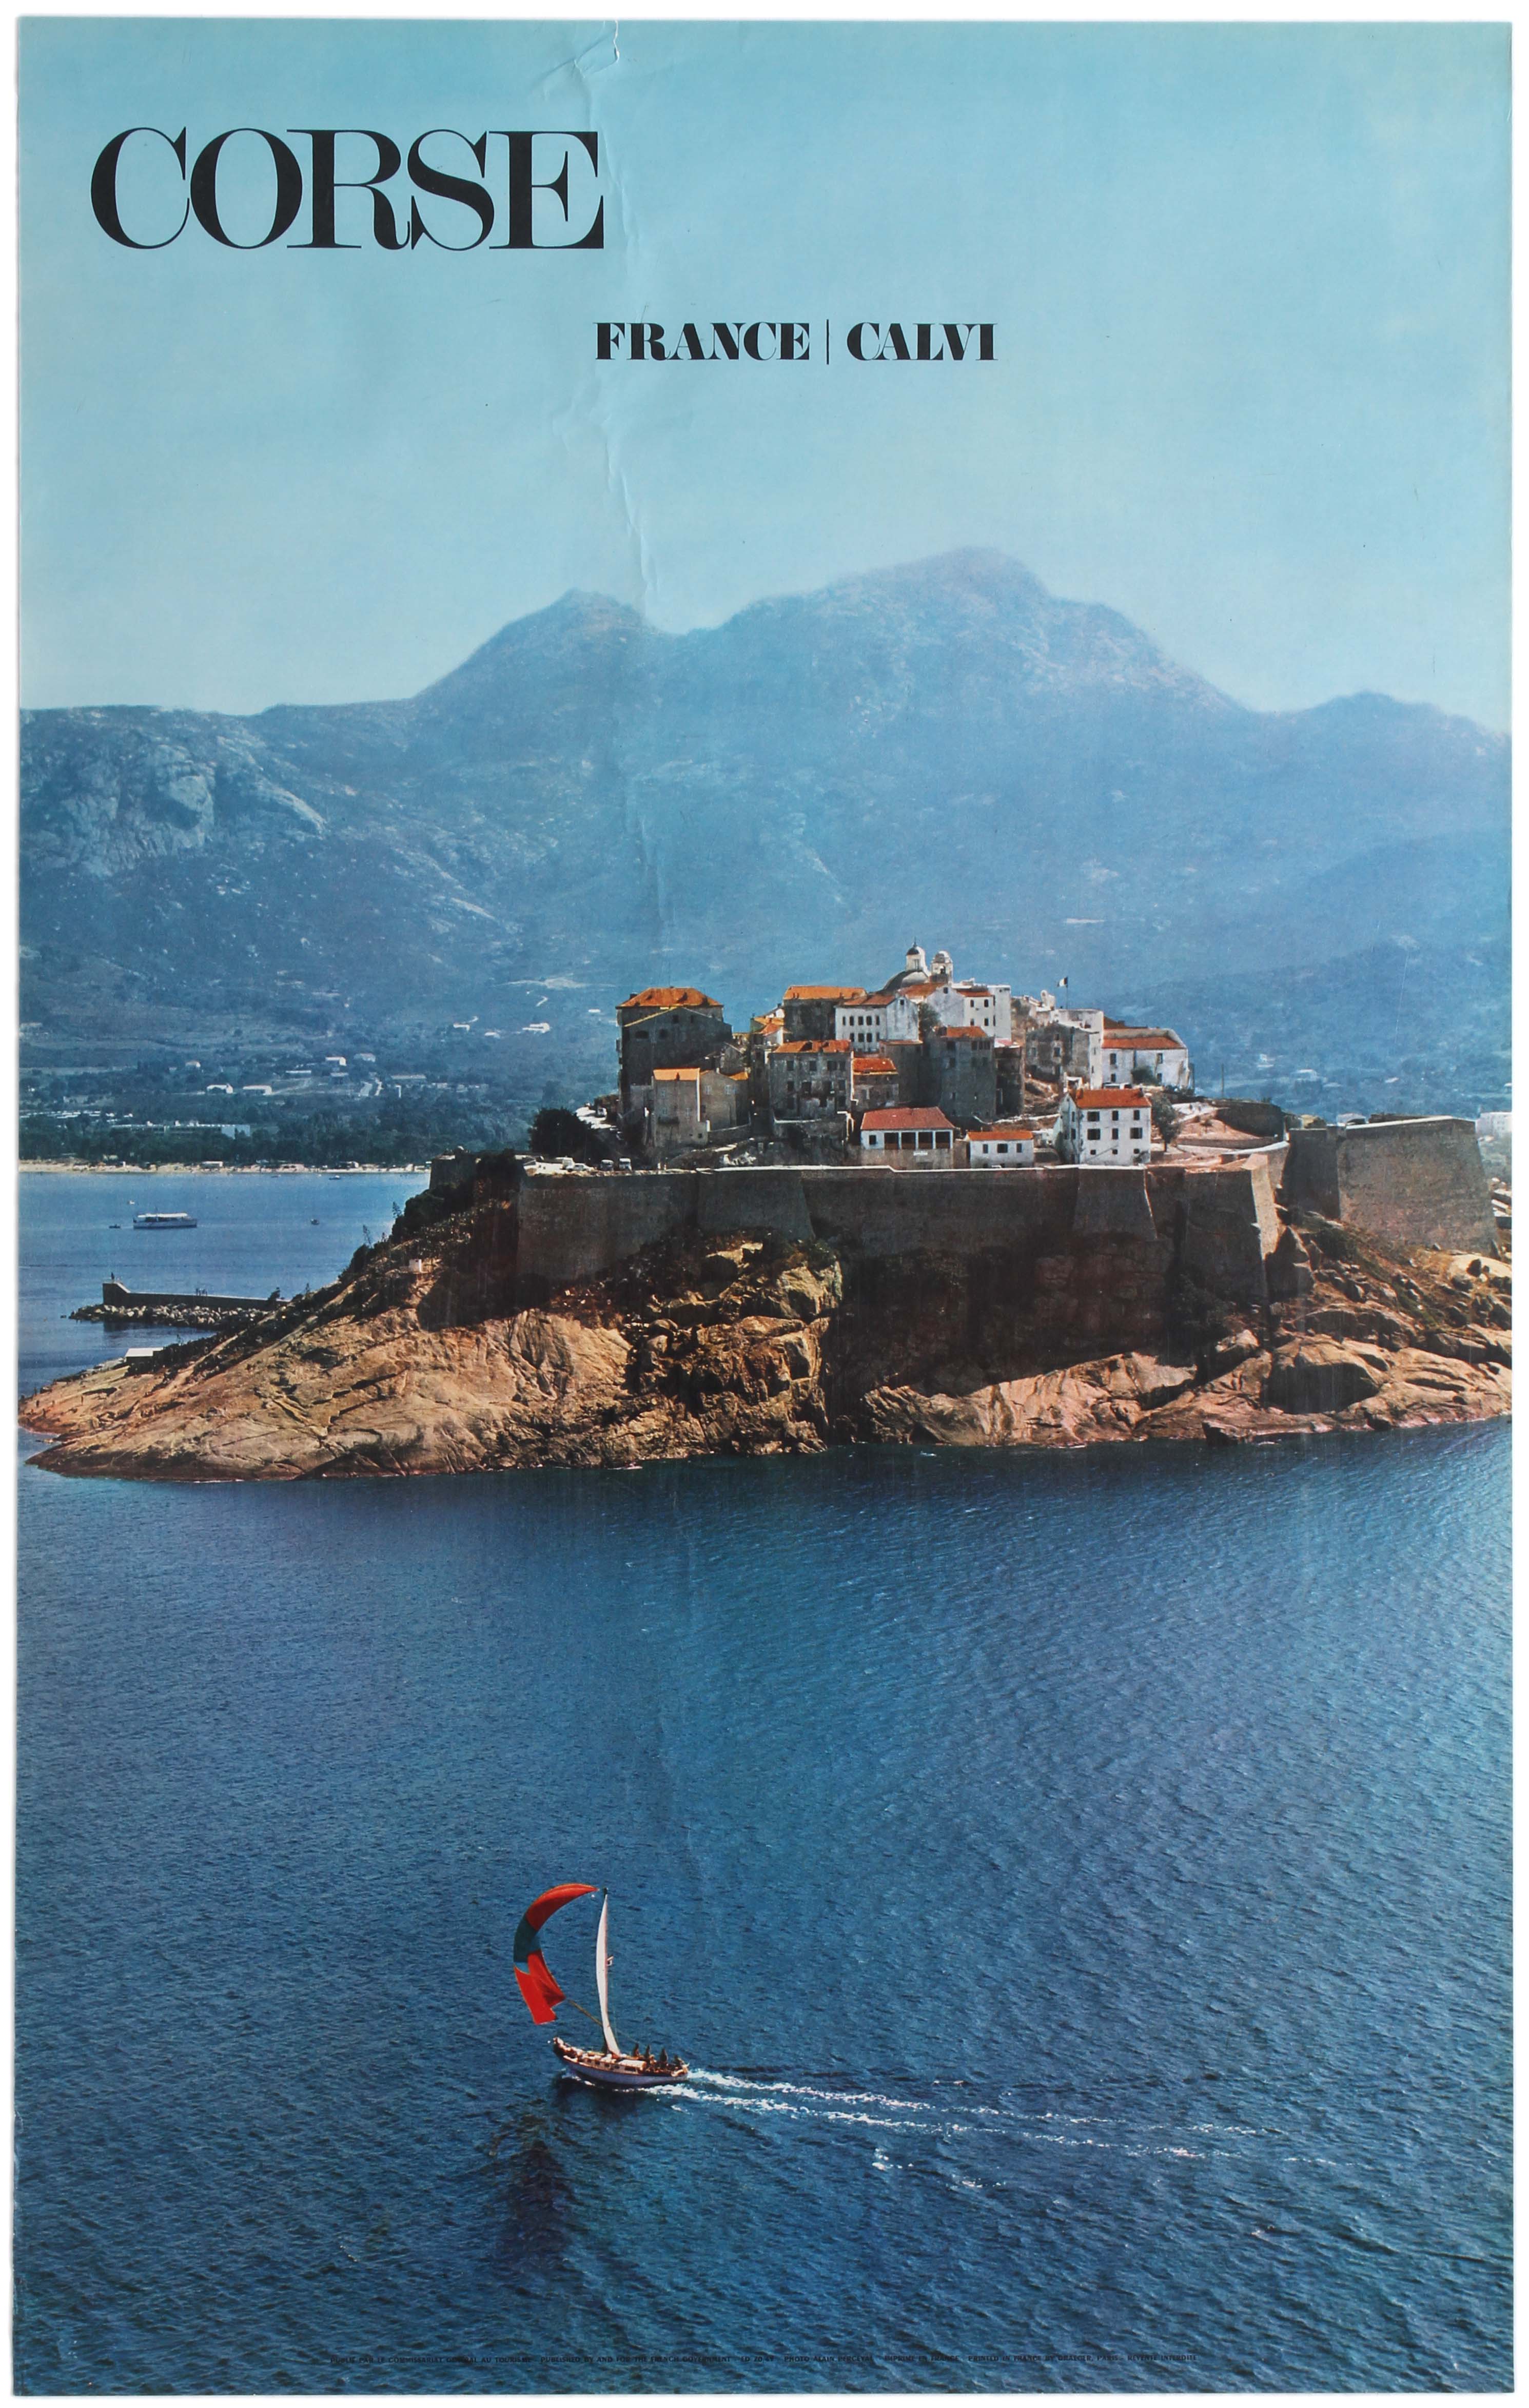 Travel Poster Corse Calvi Corsica France 1970s